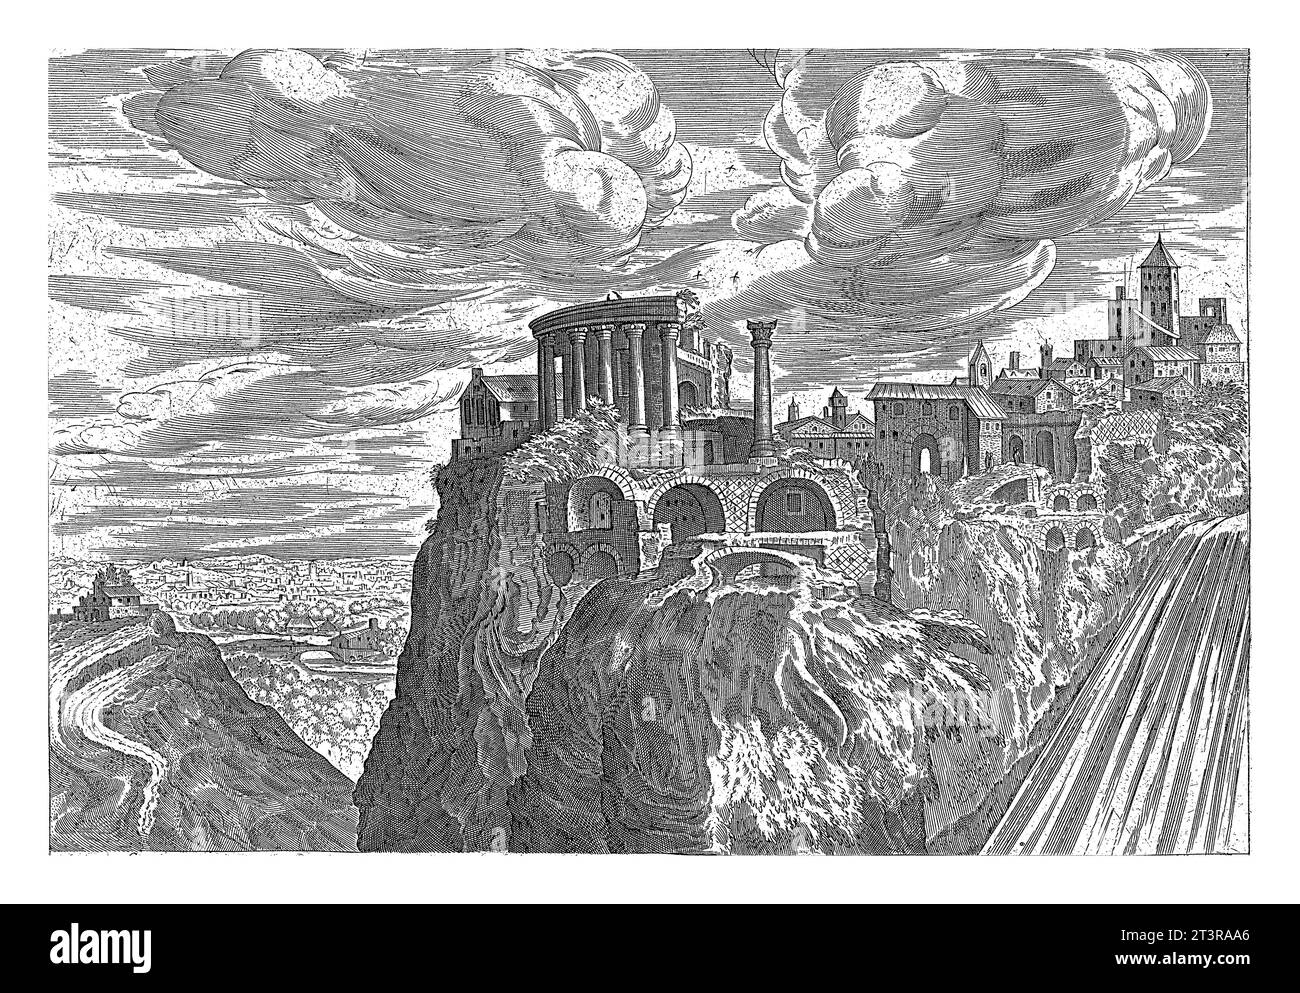 Blick auf die Wasserfälle von Tivoli, Hendrick van Cleve, 1585 Blick auf die Wasserfälle von Tivoli und die antiken Ruinen der Stadt. Stockfoto